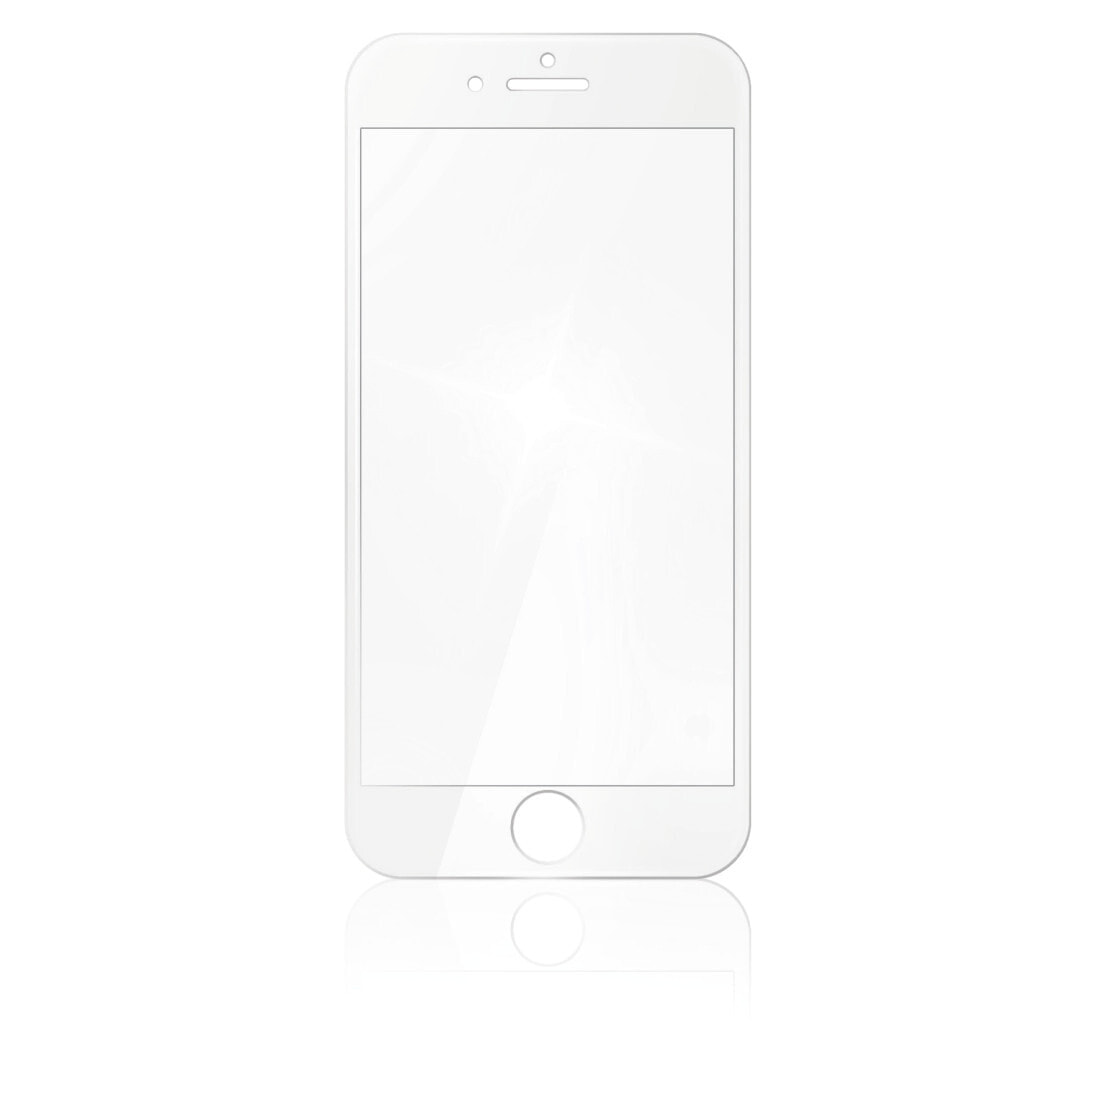 Hama 00183440 защитная пленка / стекло Прозрачная защитная пленка Мобильный телефон / смартфон Apple 1 шт